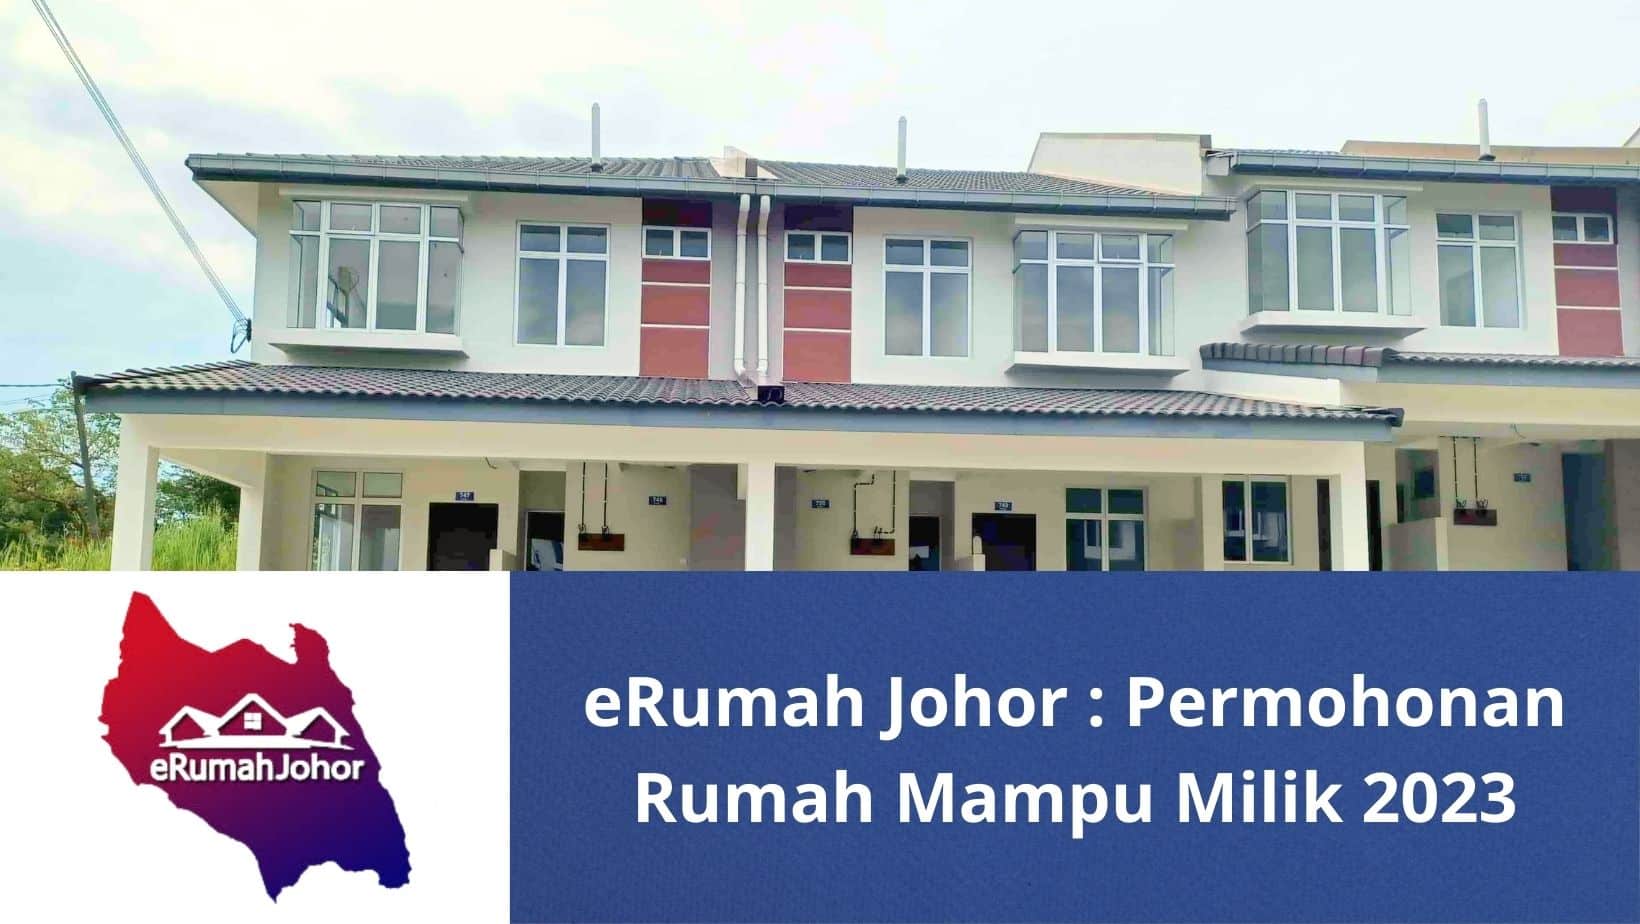 eRumah : Permohonan Rumah Mampu Milik Johor 2023